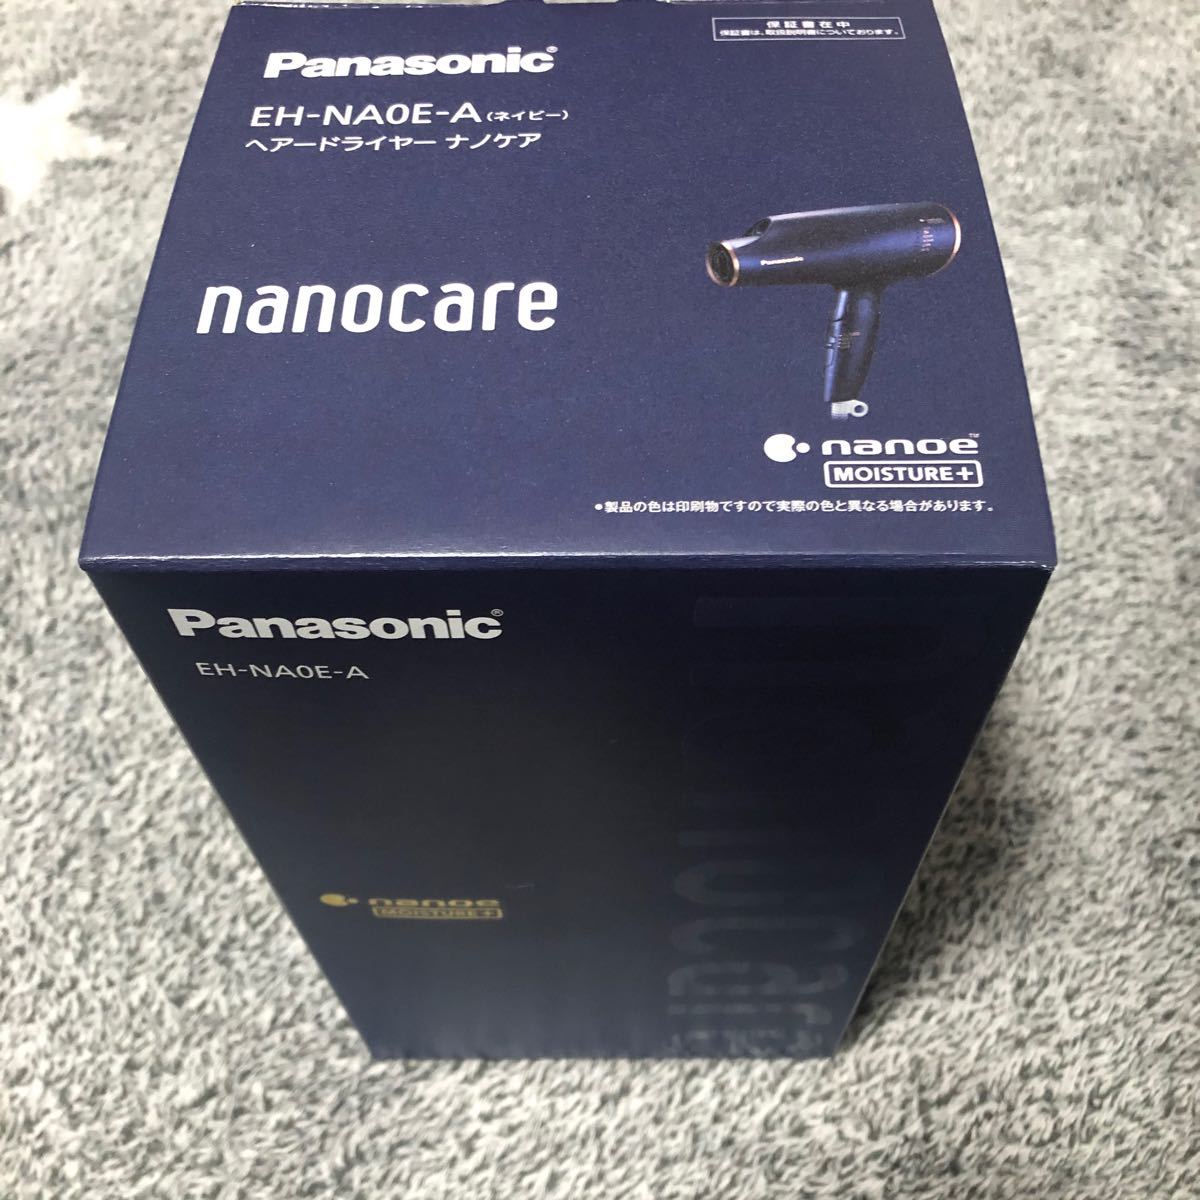 Panasonic ナノケアドライヤー EH-NA0E-A